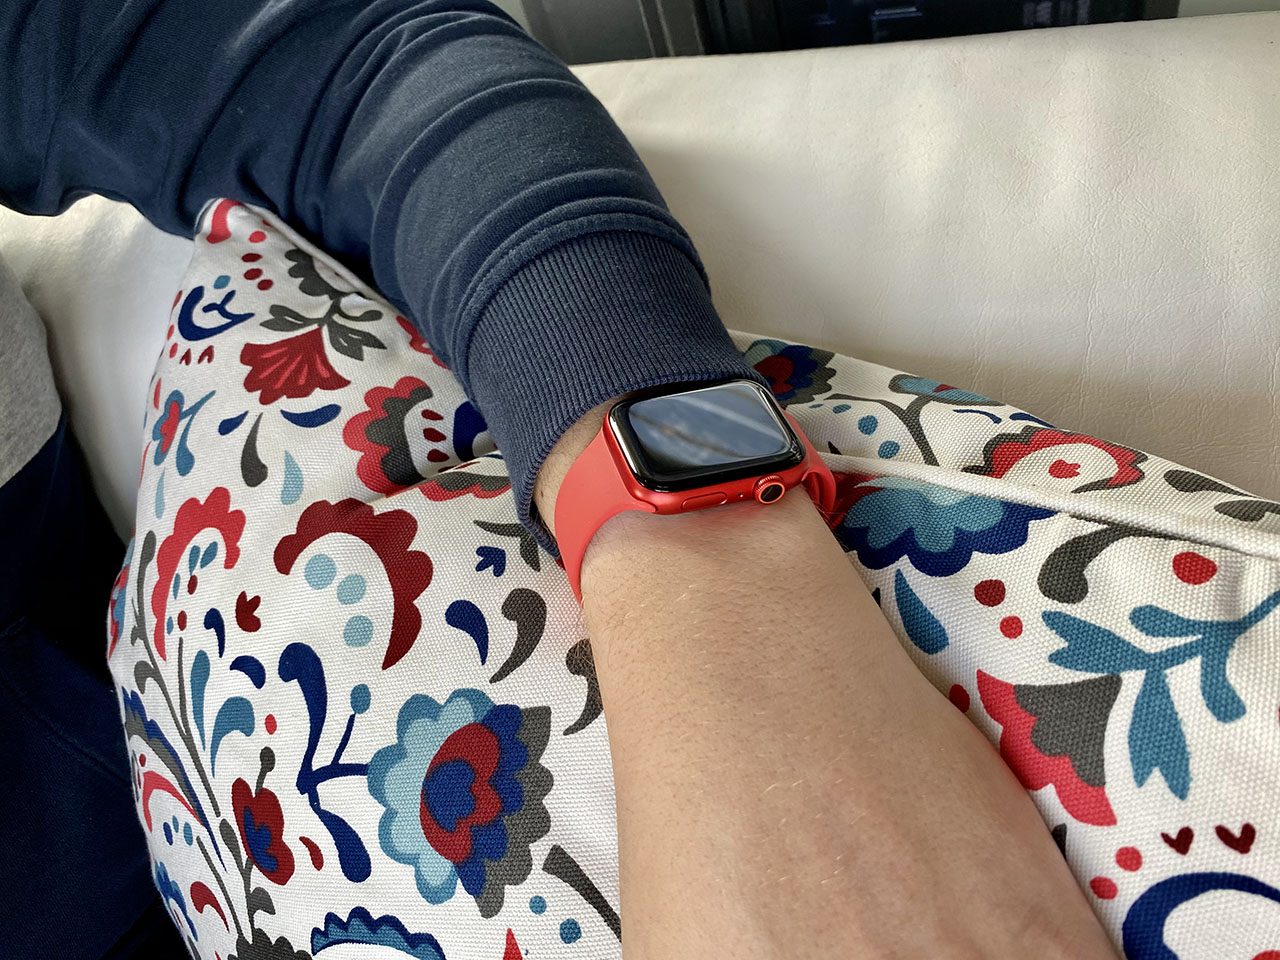 Apple Watch Series 6 in rood tijdens het dragen